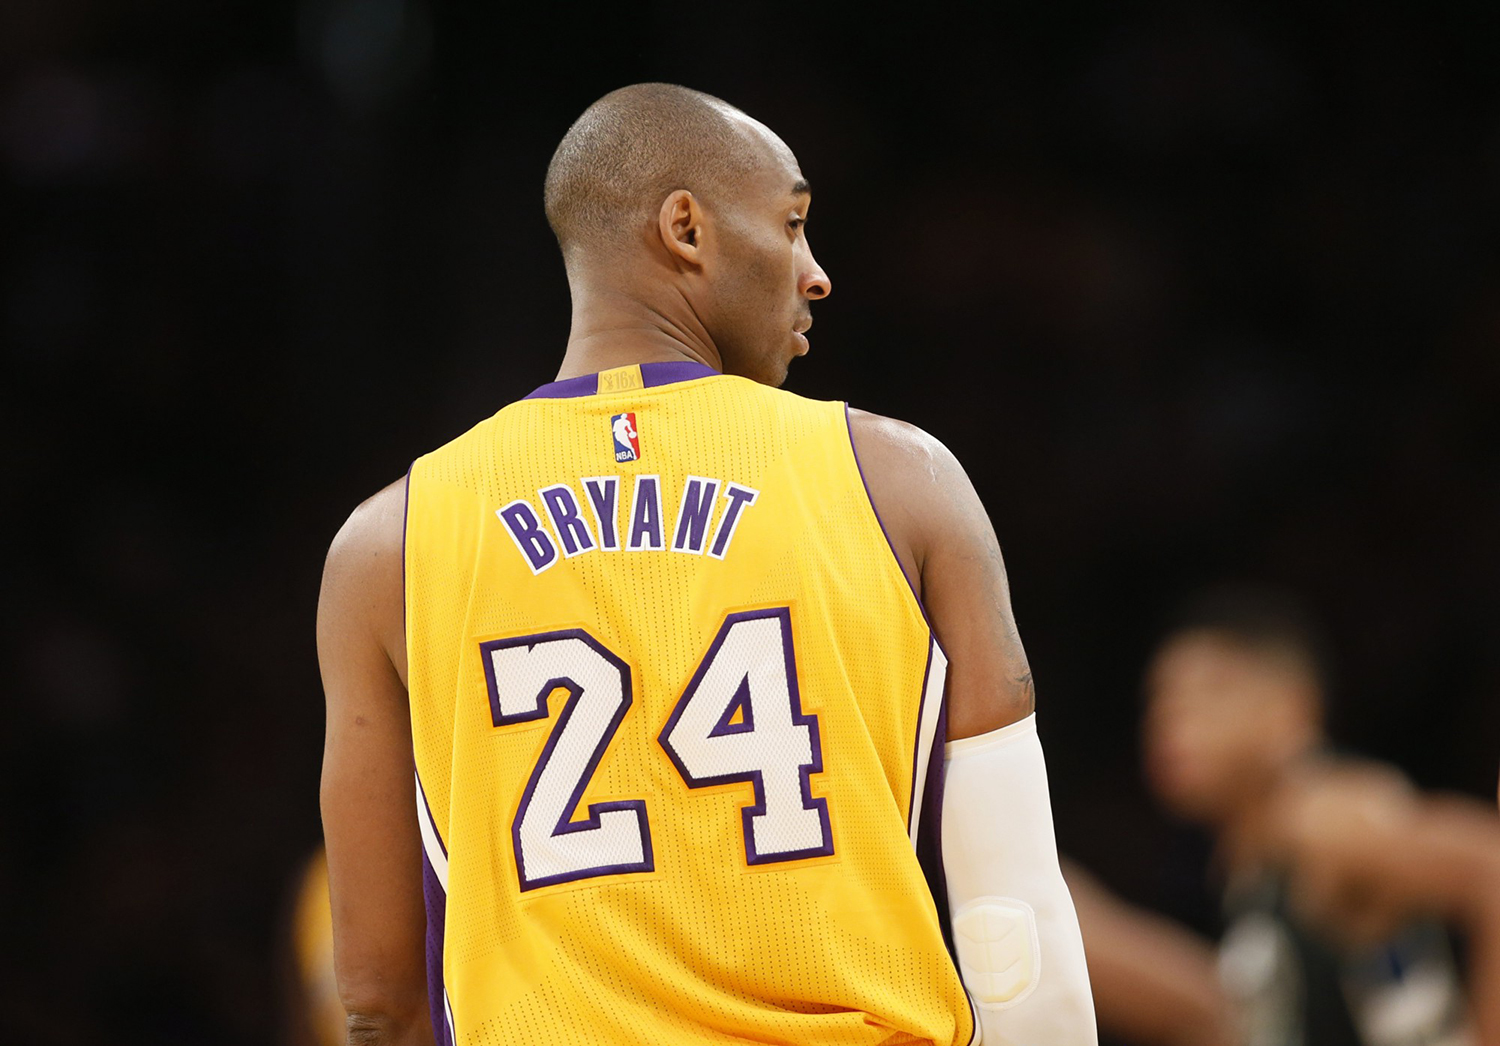 Los Lakers sufrieron la primera derrota con la camiseta de Kobe Bryant